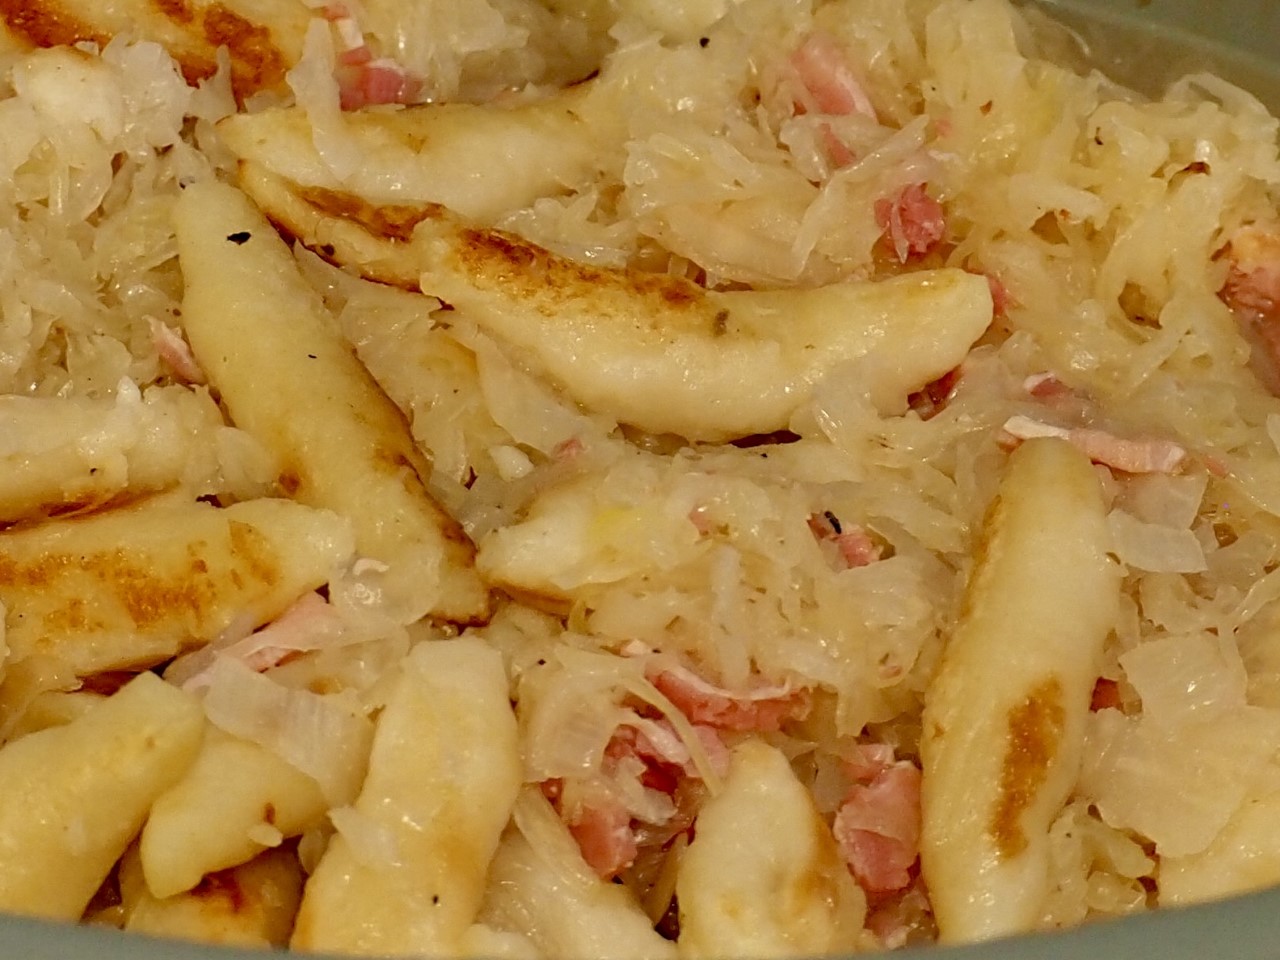 Schupfnudeln mit Sauerkraut – German Potato Noodles with Sauerkraut and Bacon